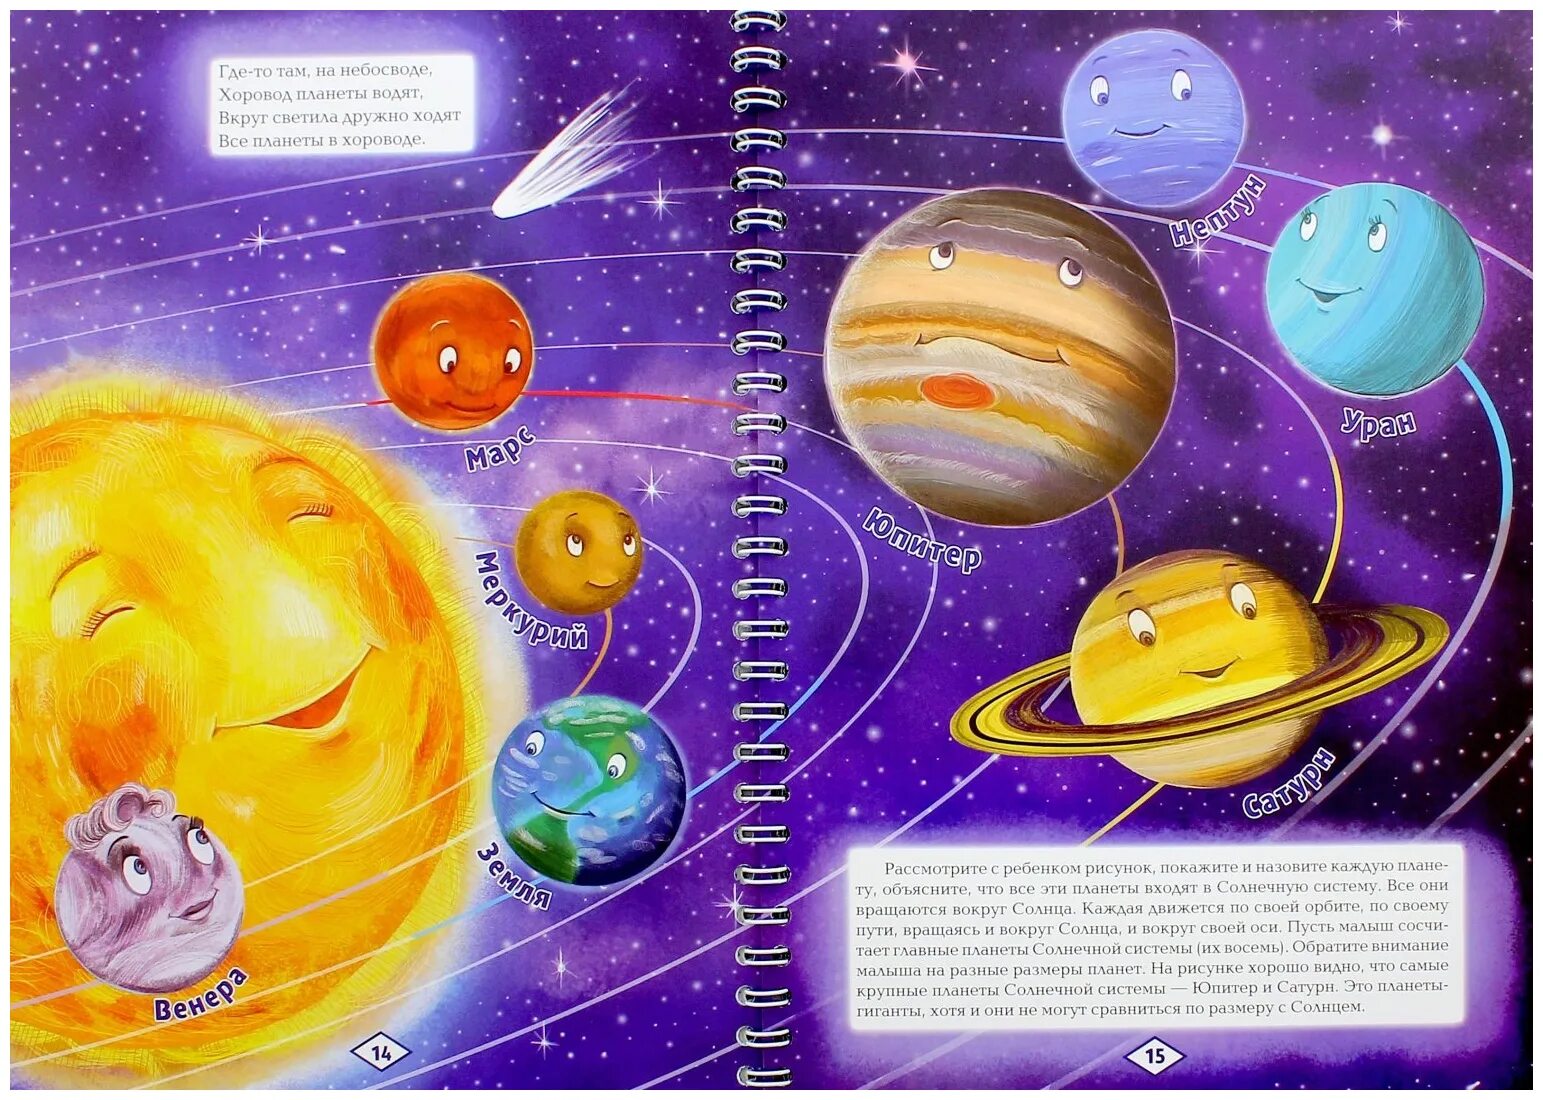 Планеты для дошкольников. Косомсдля дошкольников. Космос для дошкольников. Стих про планеты солнечной